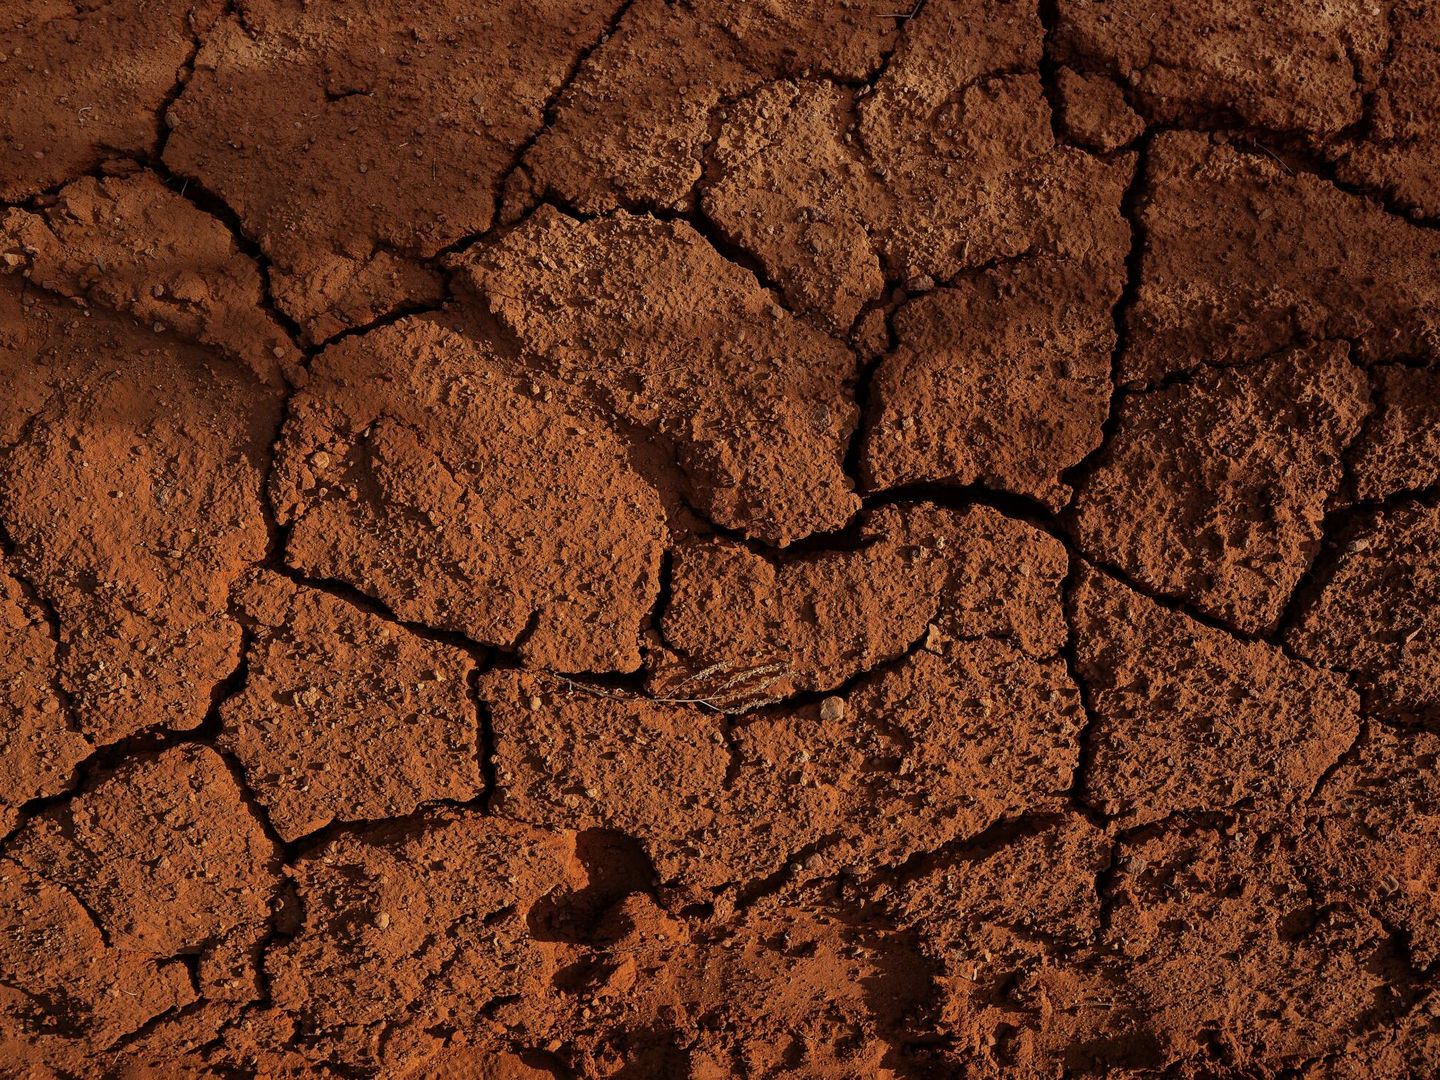 La salinidad del suelo, uno de los mayores riesgos. Foto: Unsplash